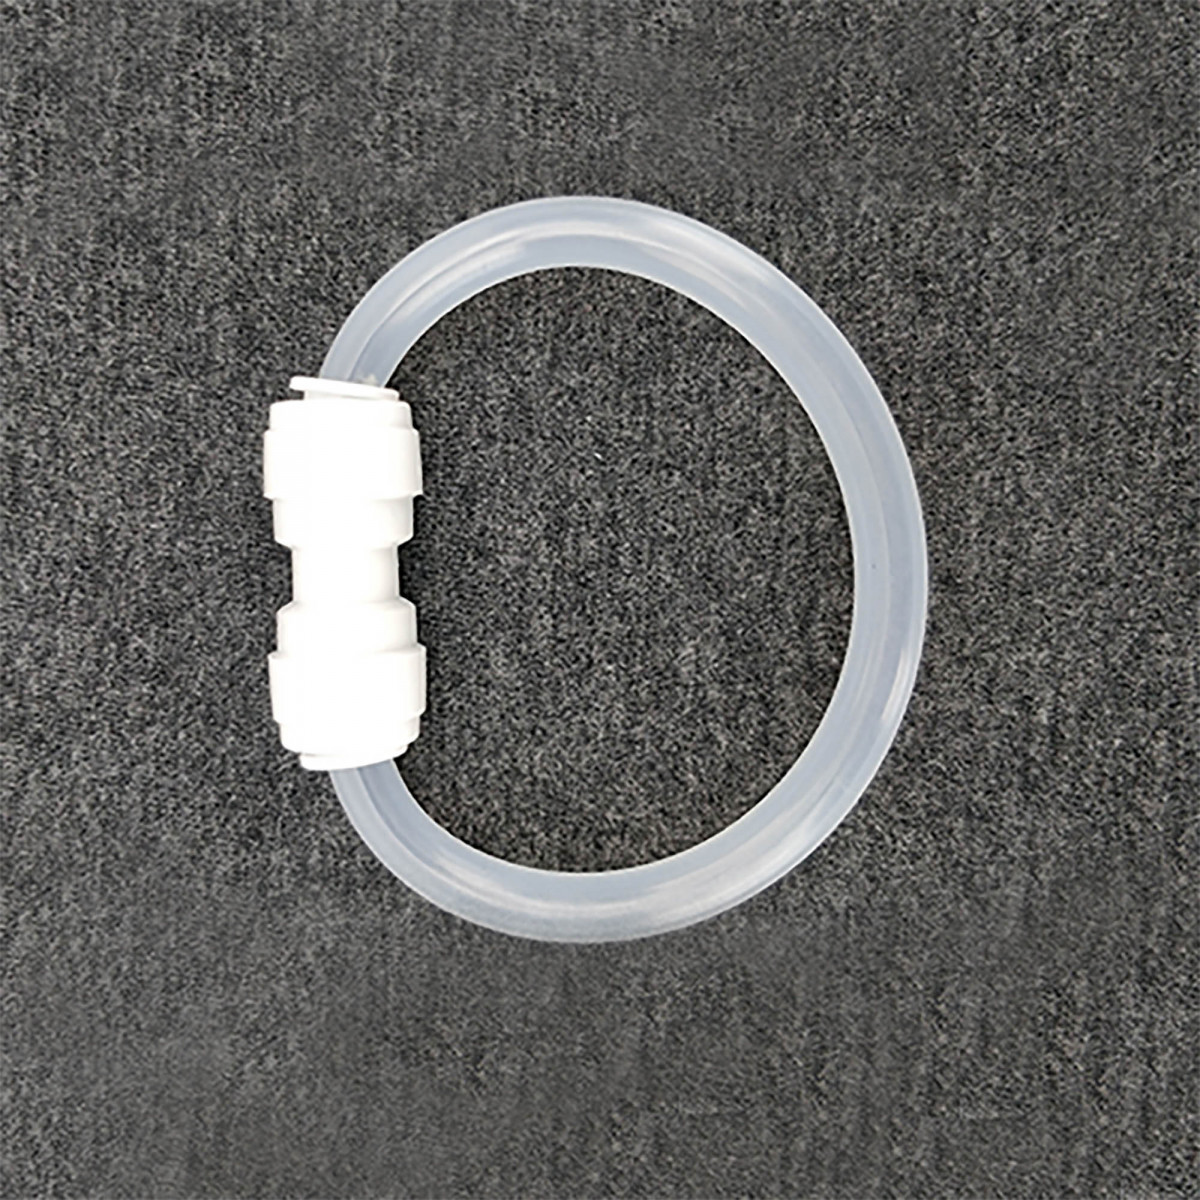 Raccord enfichable Duotight 8 mm (5/16”)  pièce de connexion